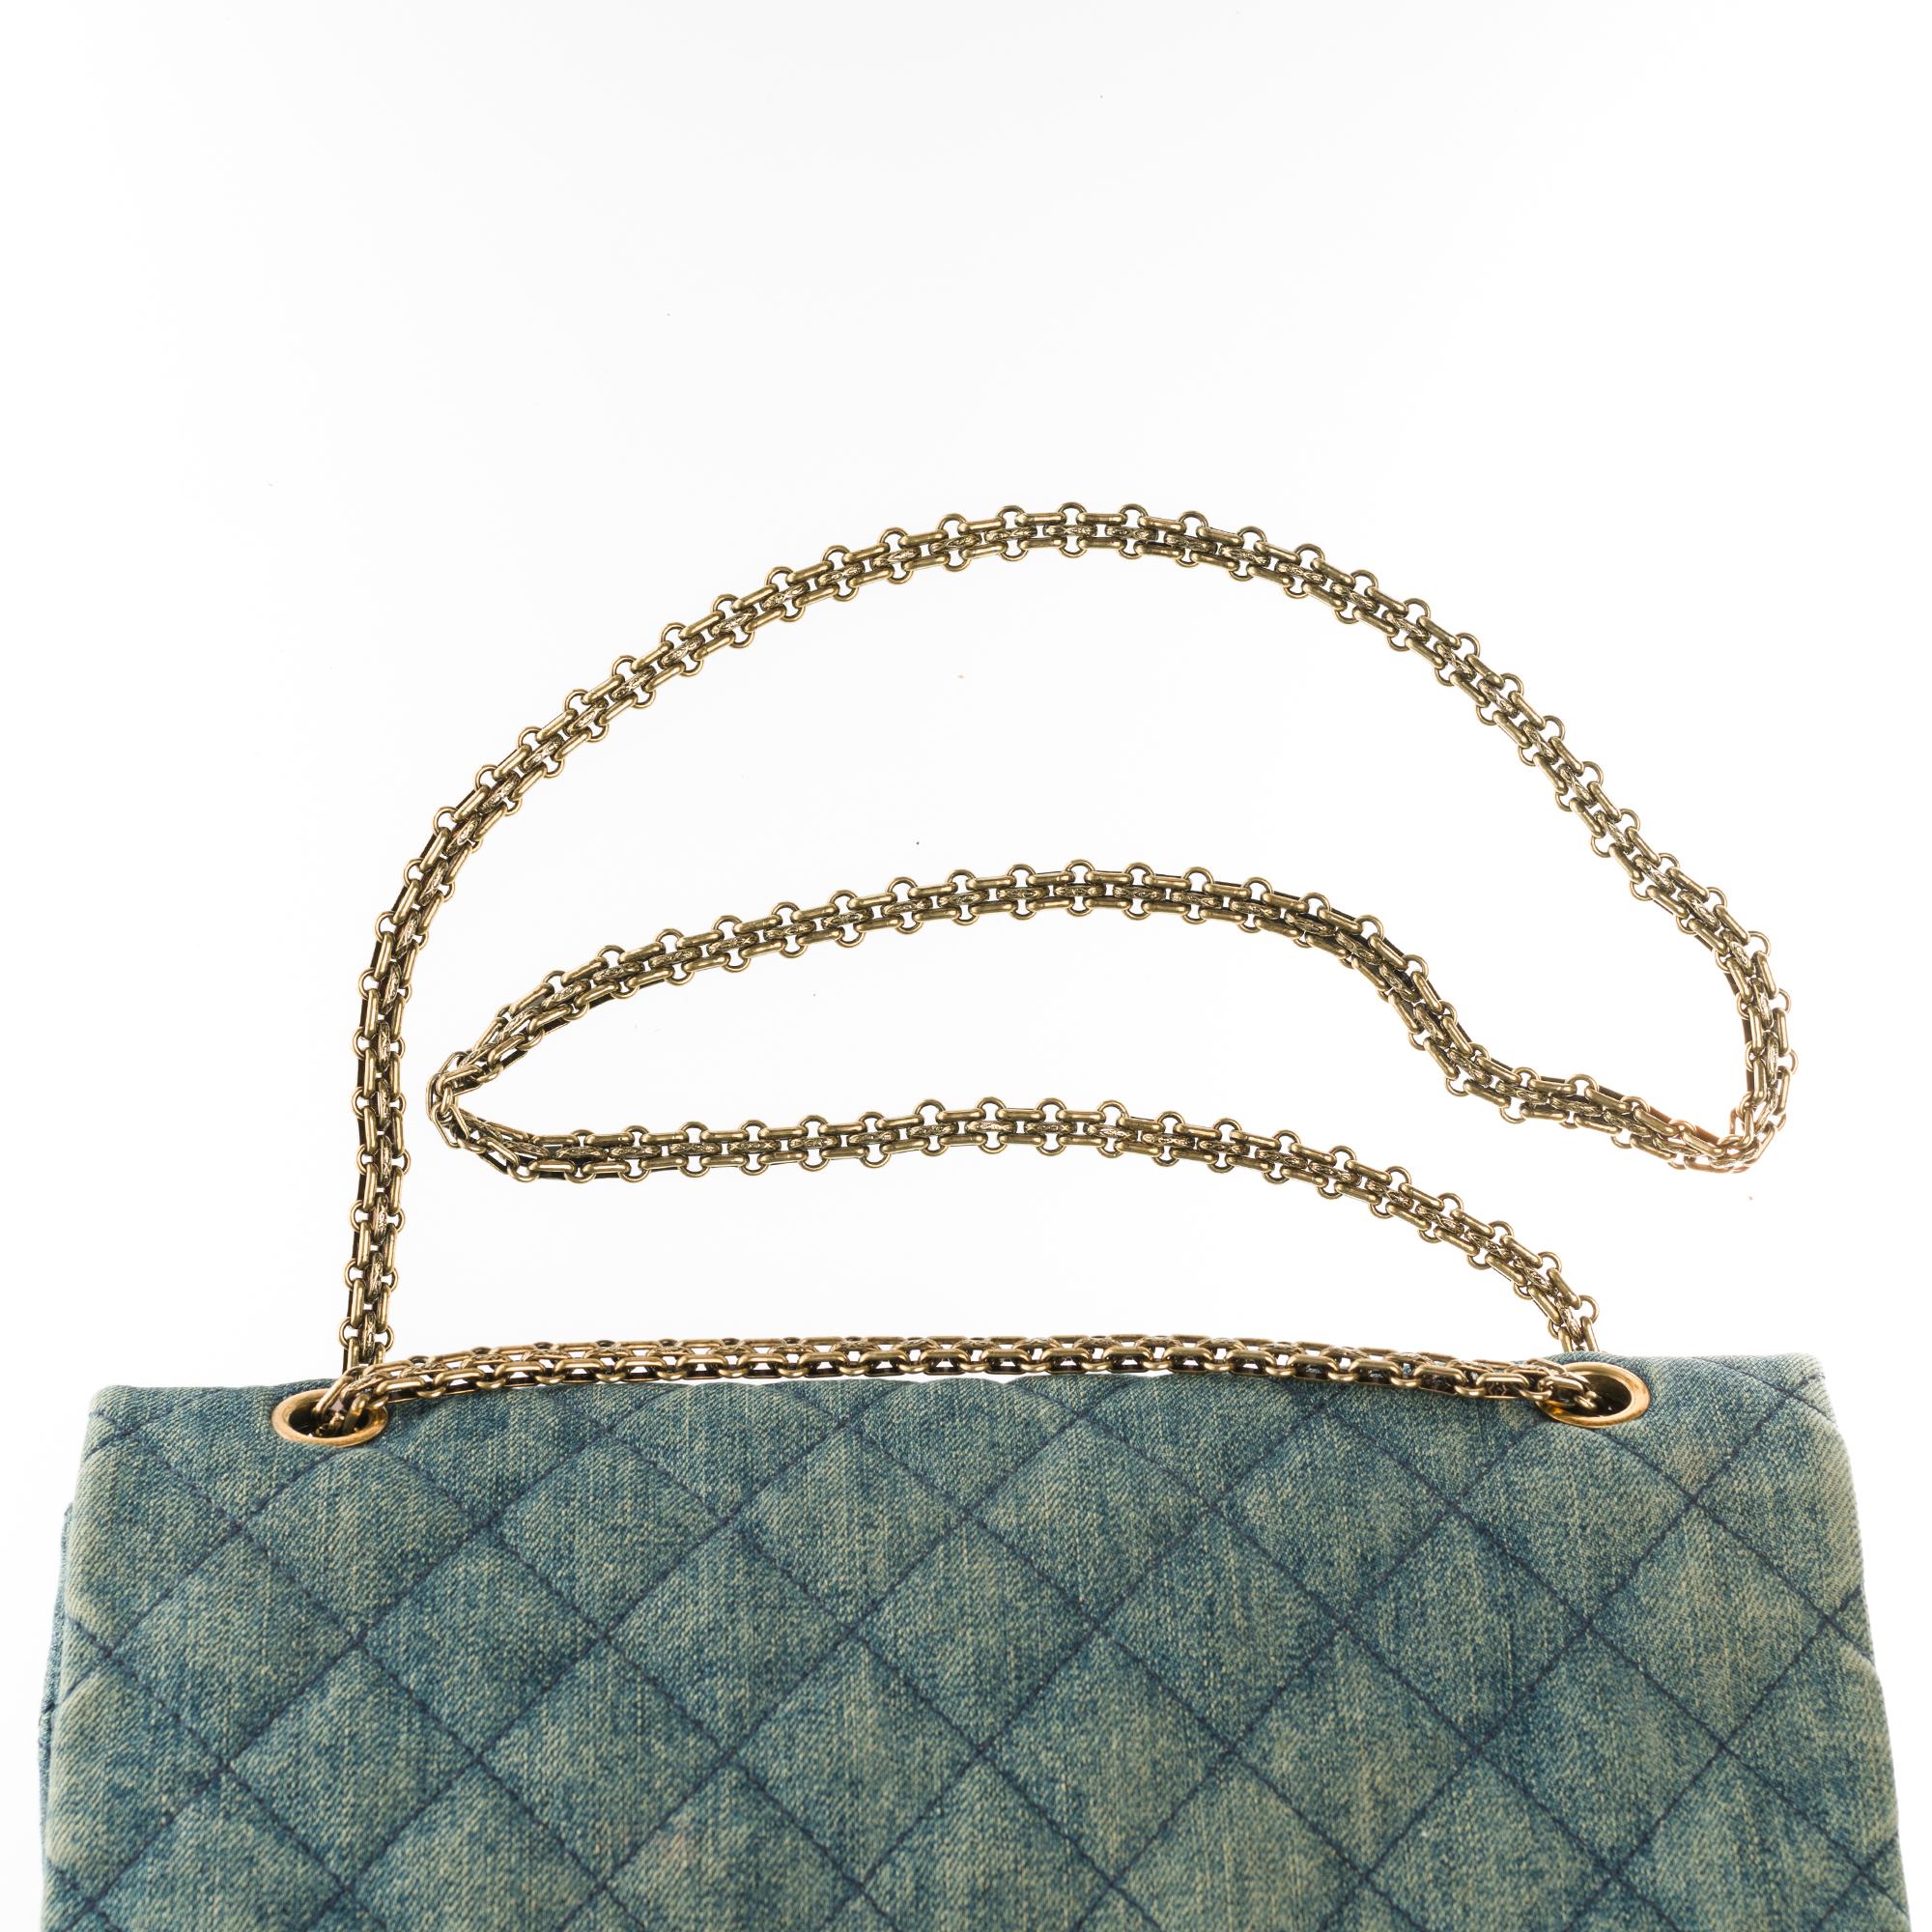 Women's Chanel 2.55 Reissue 227 handbag in blue quilted denim with bronze hardware